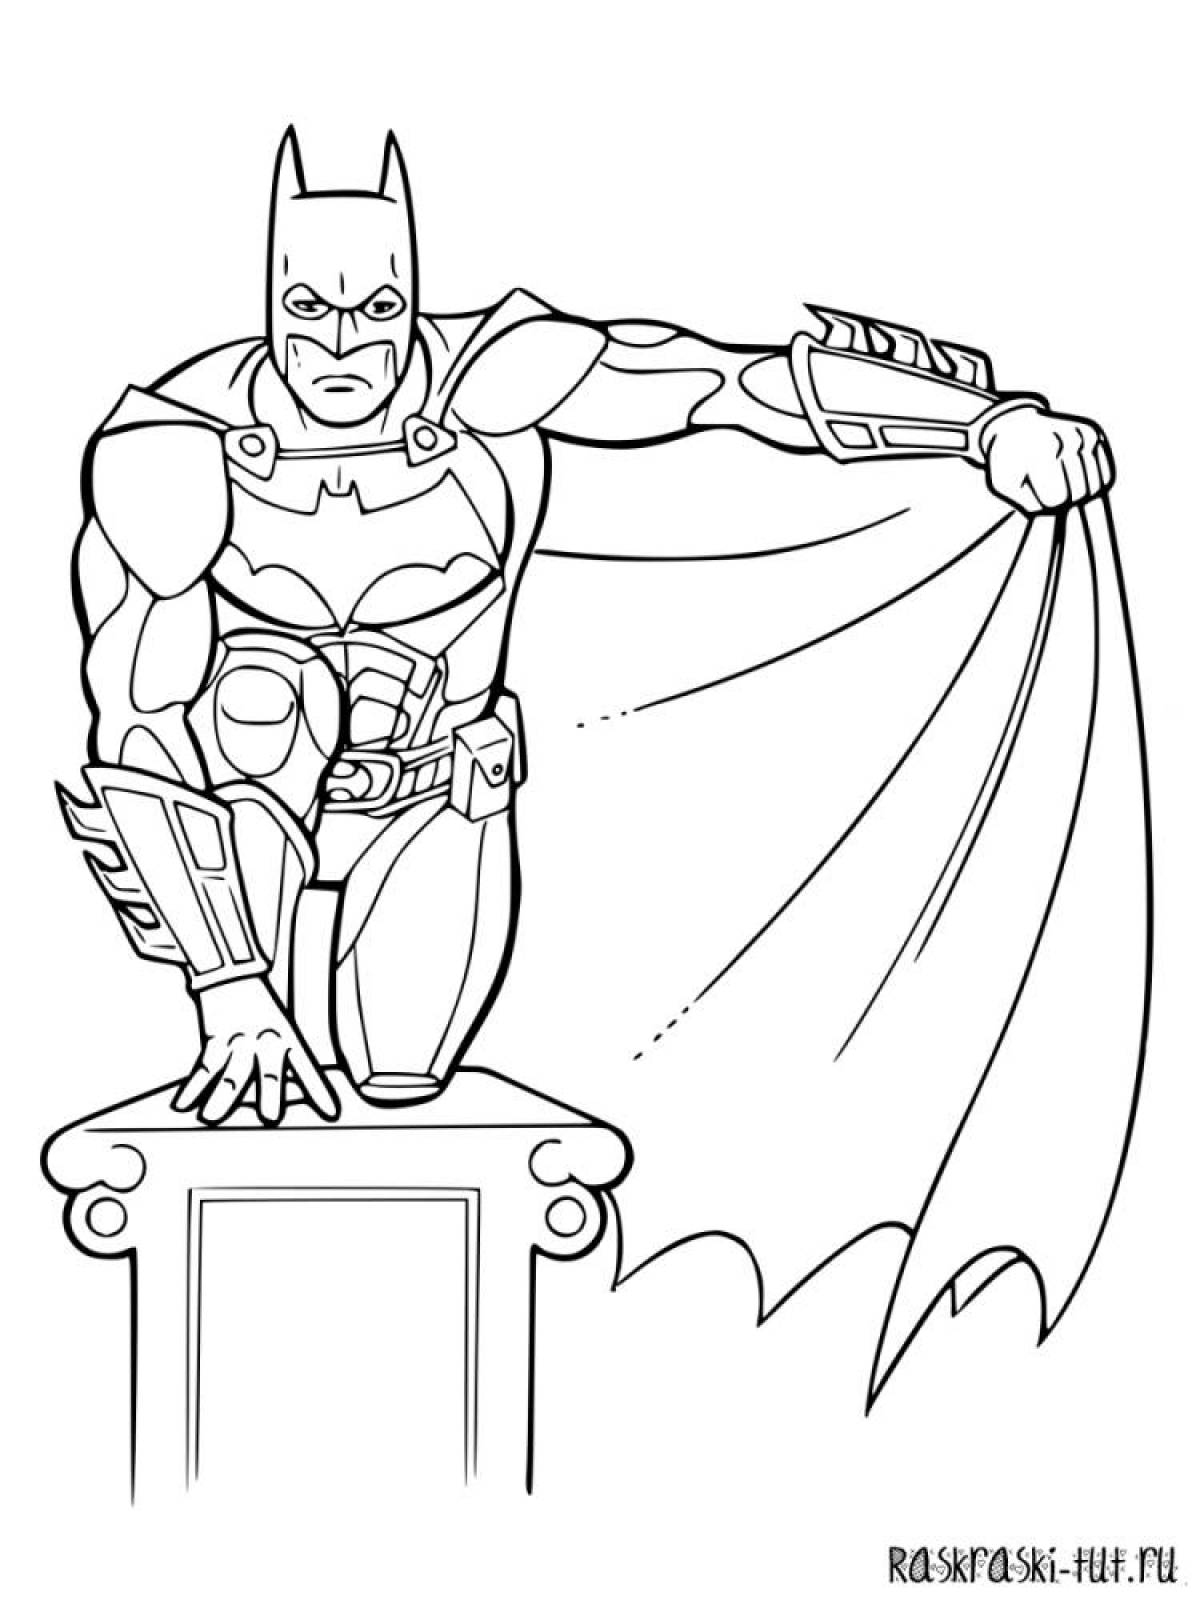 Royal batman coloring page